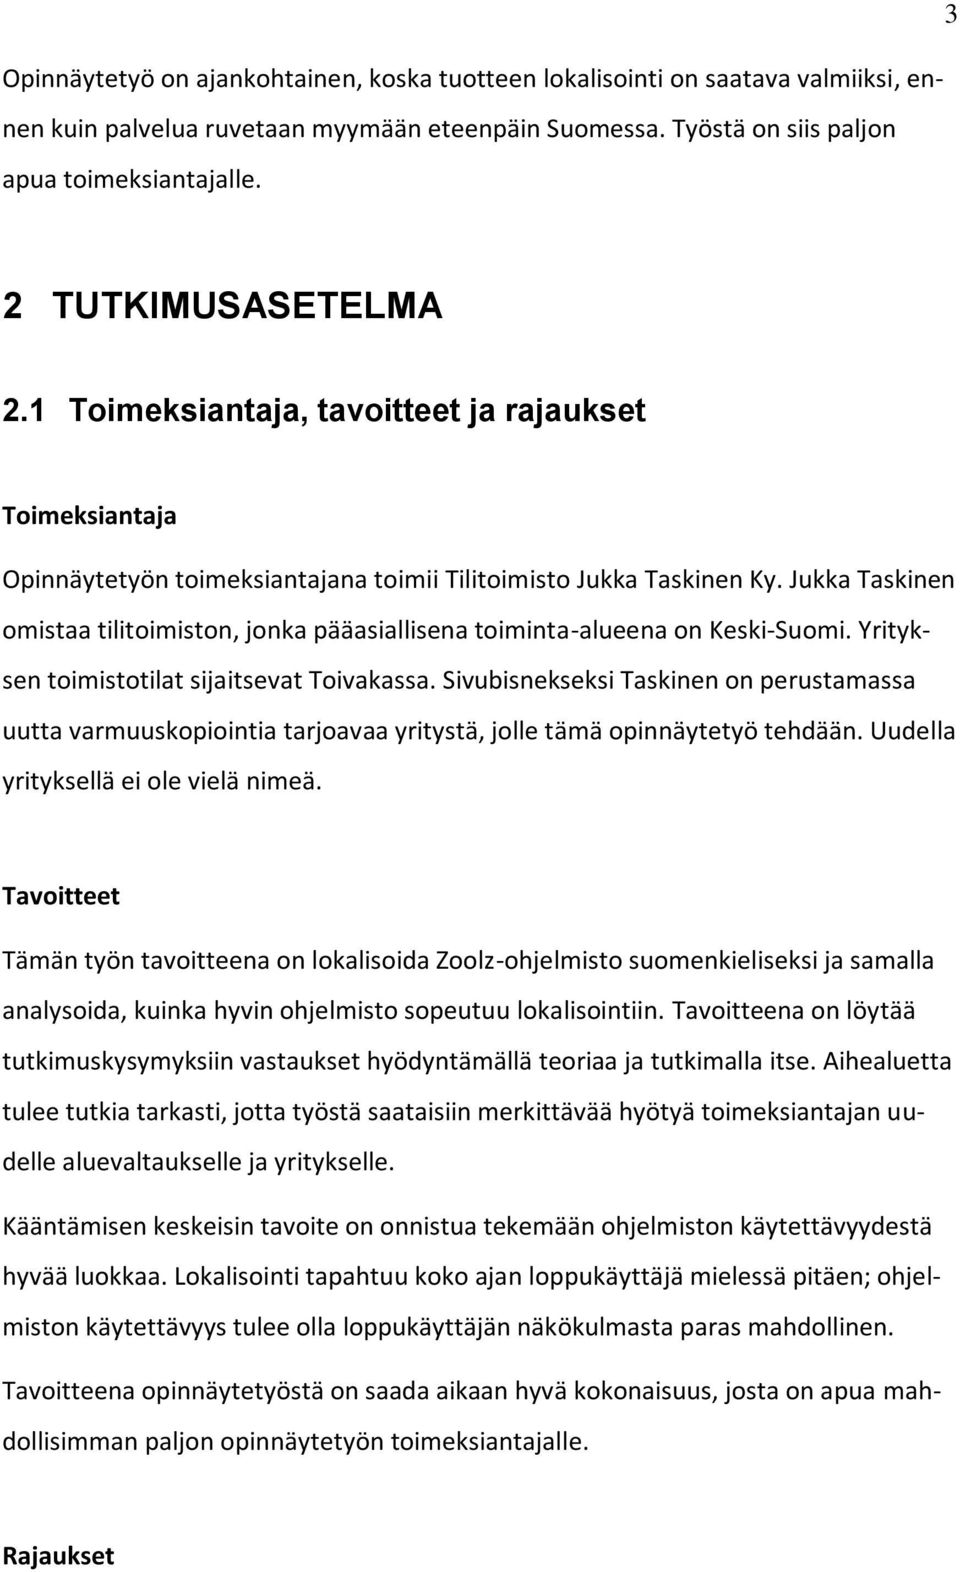 Jukka Taskinen omistaa tilitoimiston, jonka pääasiallisena toiminta-alueena on Keski-Suomi. Yrityksen toimistotilat sijaitsevat Toivakassa.